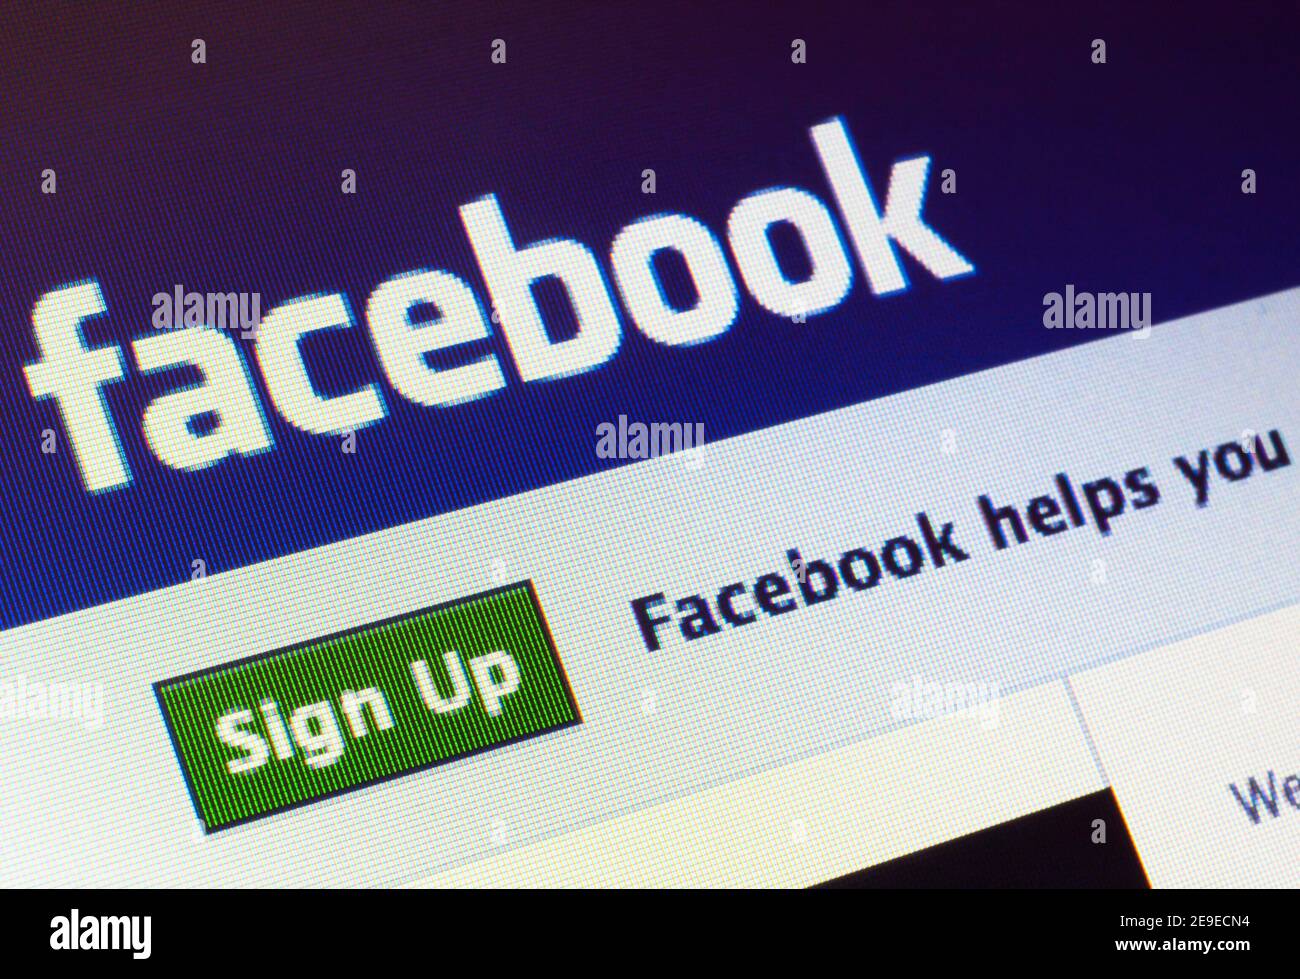 facebook.com Startseite auf dem Bildschirm. Facebook ist ein Online-Dienst für soziale Netzwerke und Microblogging Stockfoto